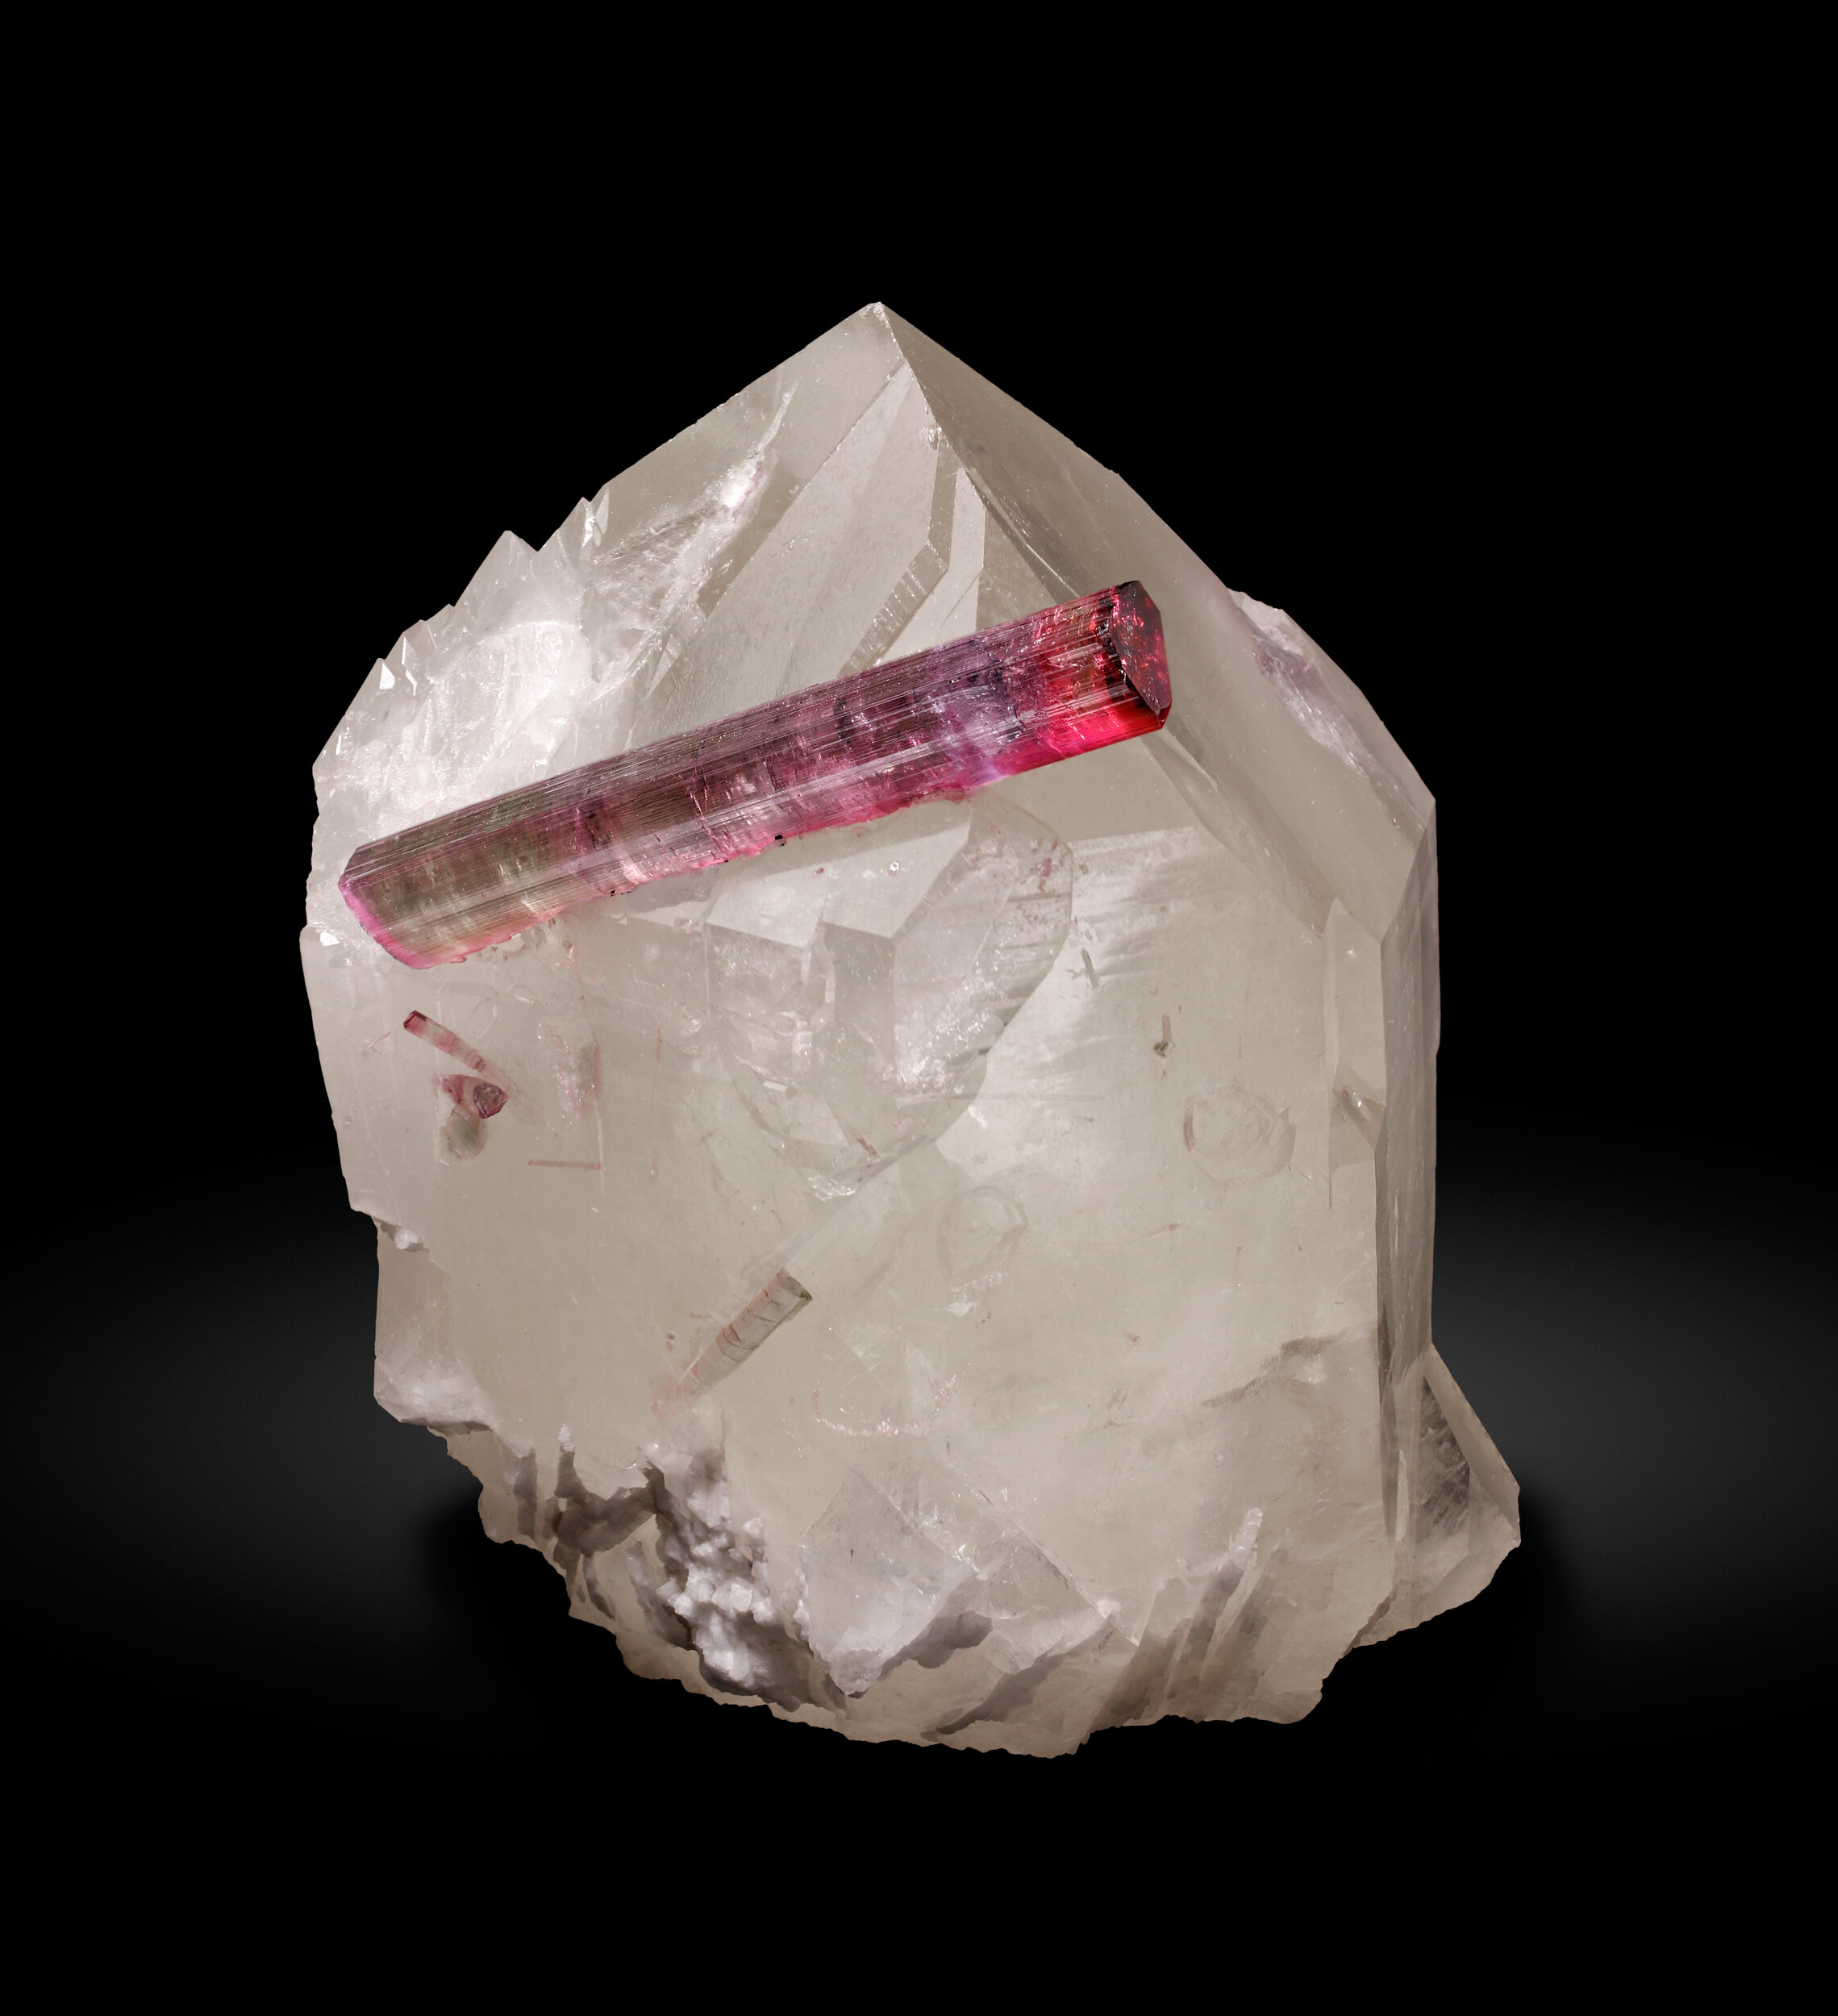 specimens/s_imagesCD2/Elbaite-MBB98CD2_0401_f.jpg